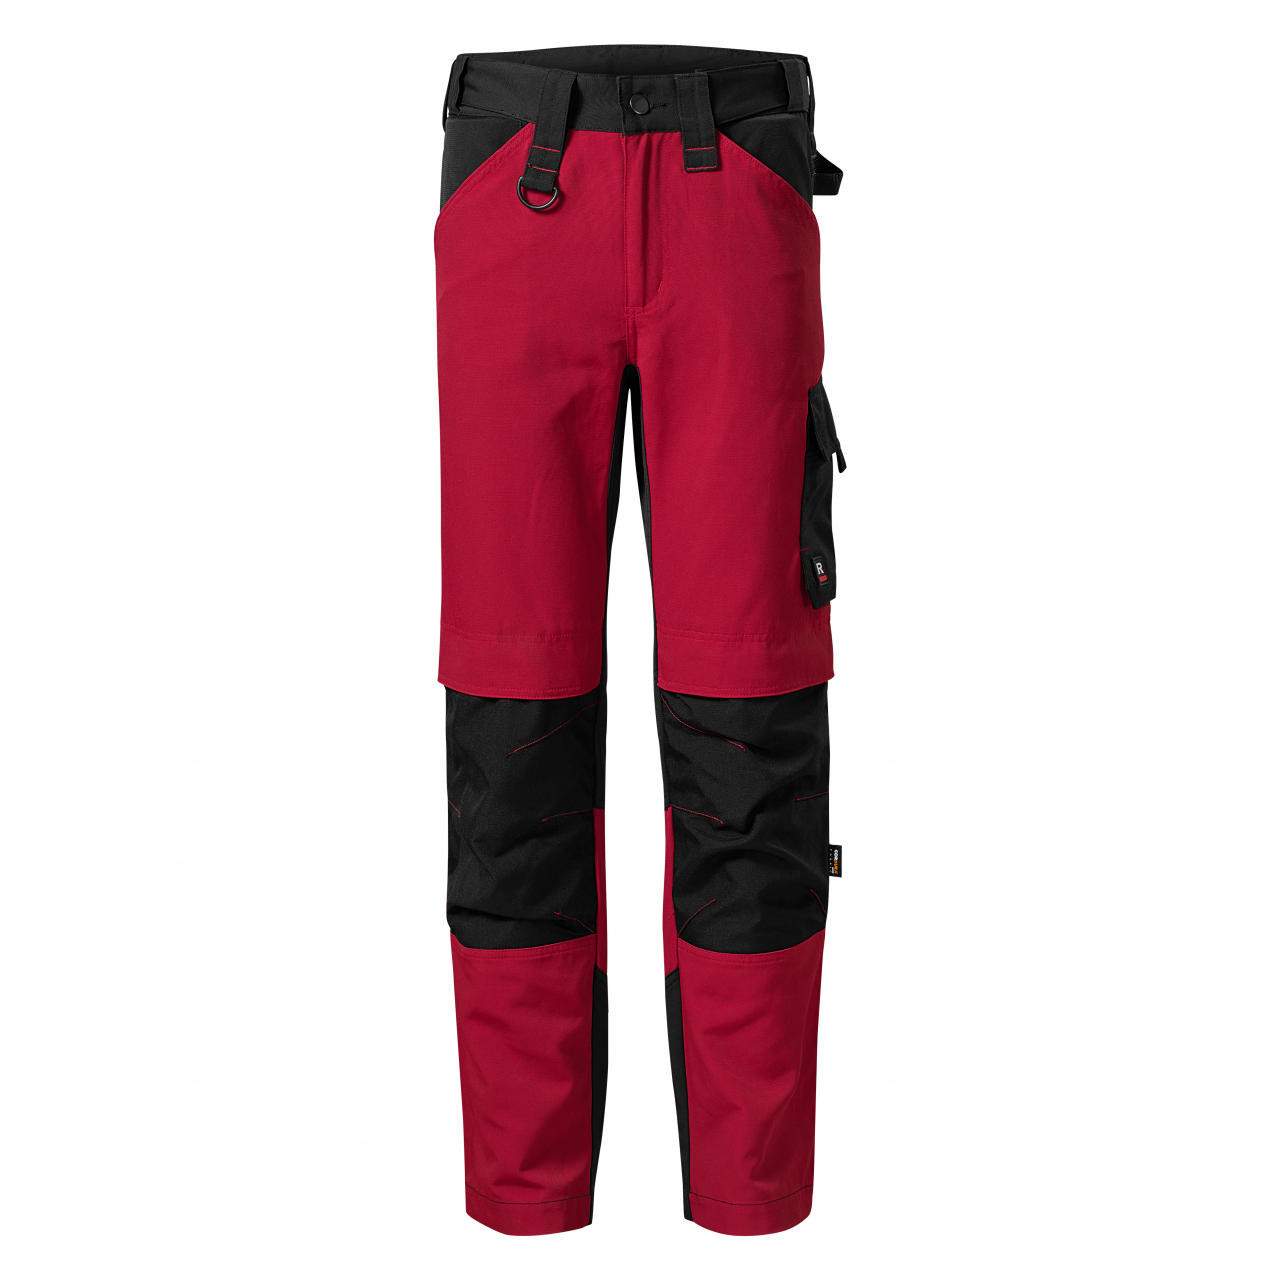 Pracovní kalhoty pánské Rimeck Vertex - černé-červené, 46